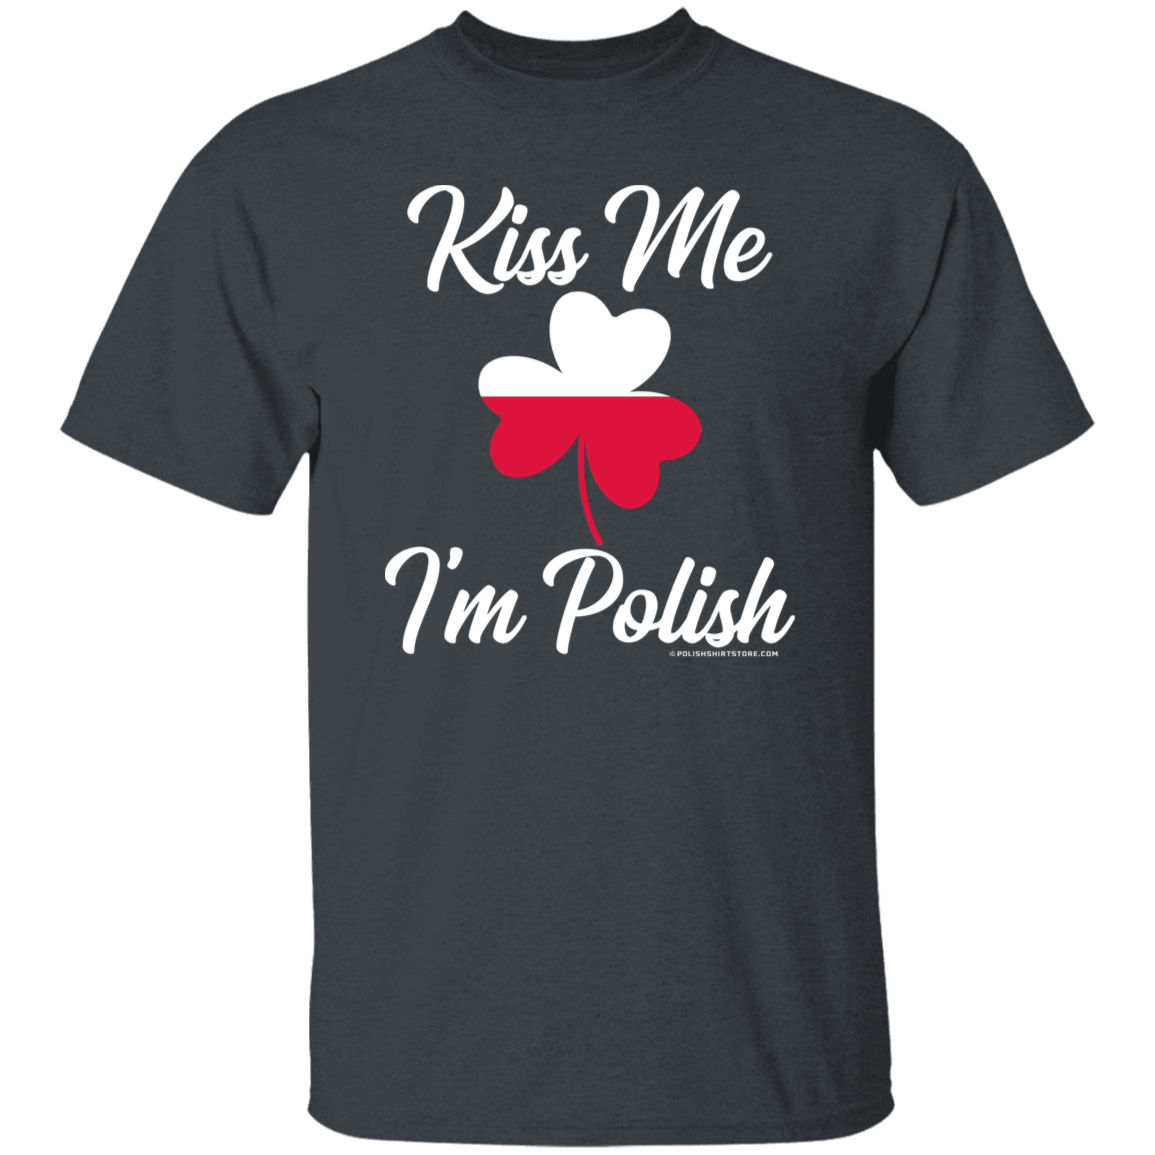 Kiss Me I'm Polish Apparel CustomCat G500 5.3 oz. T-Shirt Dark Heather S